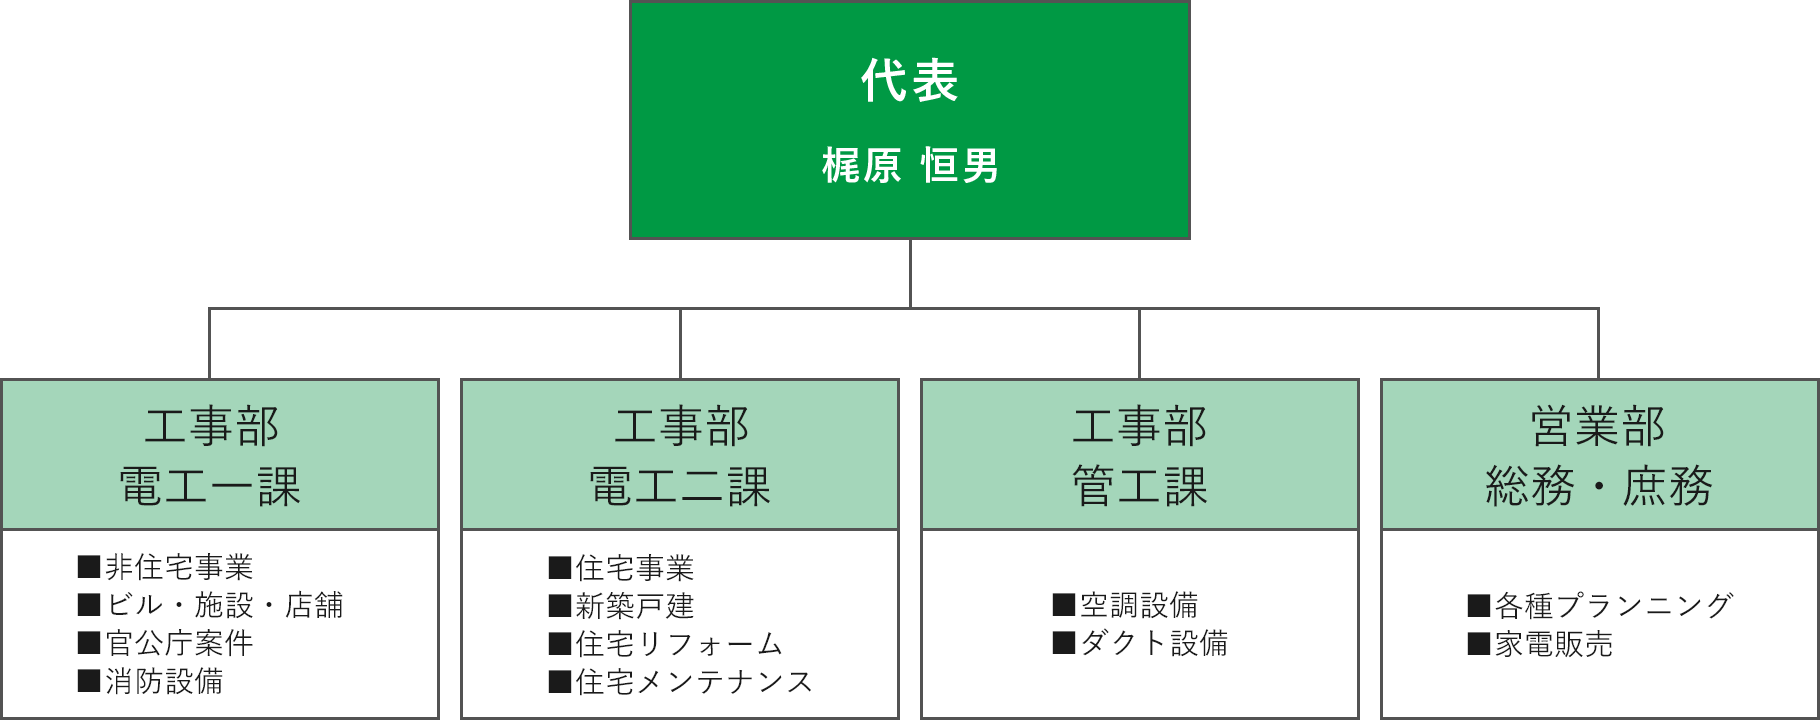 片岡デンキ緑地店の組織図